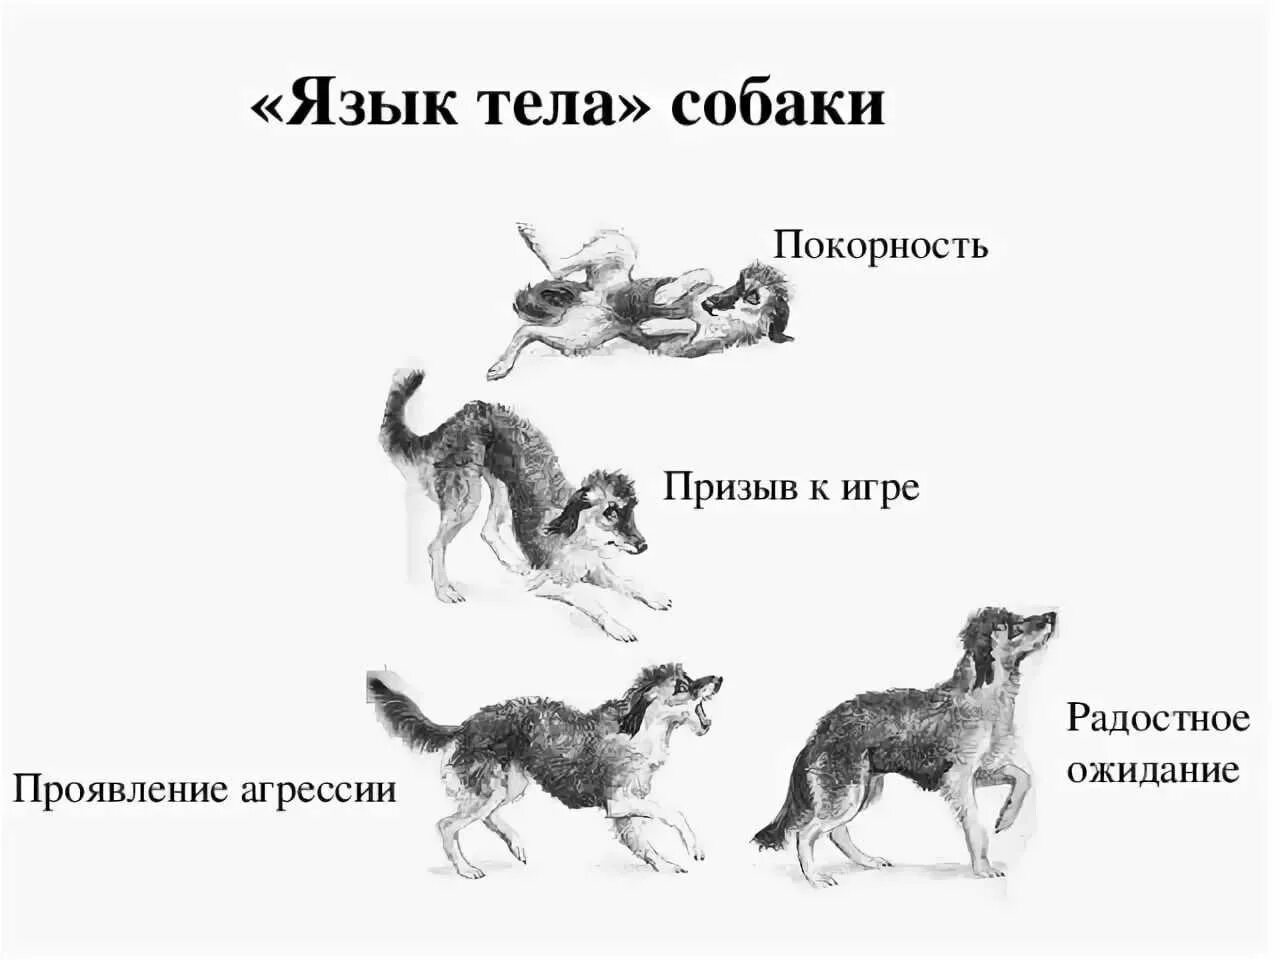 Поведение собак. Язык тела собаки в картинках. Араедение собак. Виды поведения собак.